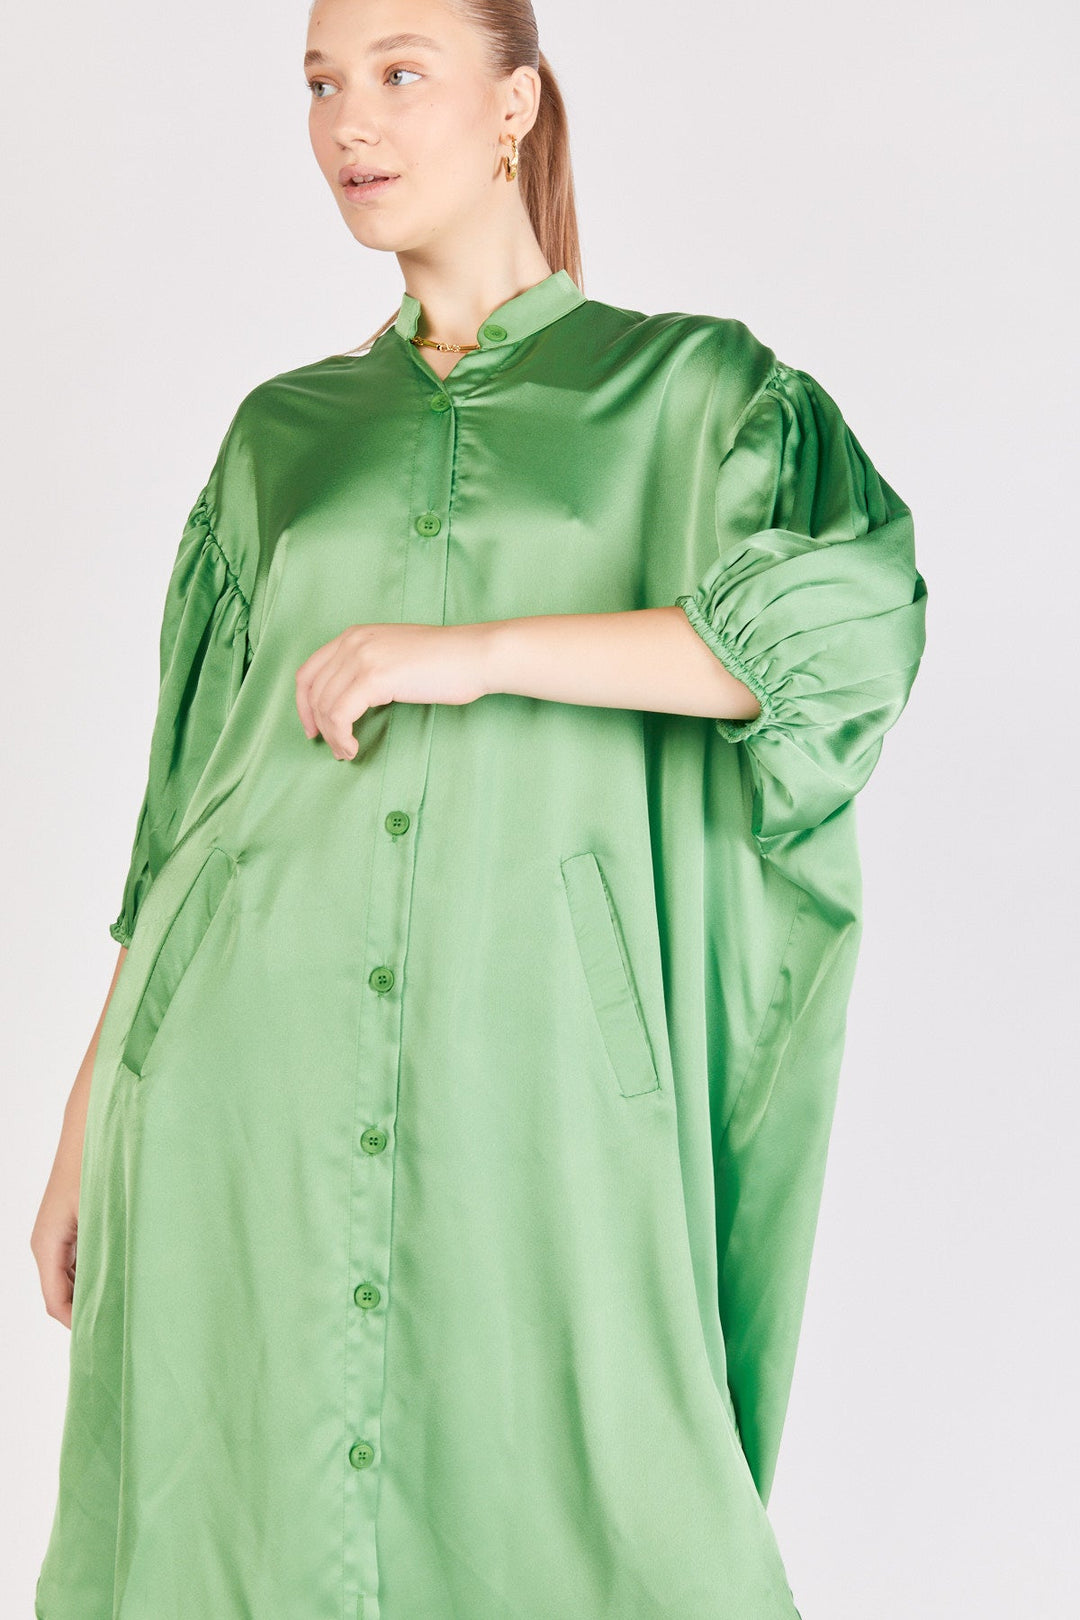 שמלת אוברסייז אנדריאה בצבע ירוק - Dana Sidi